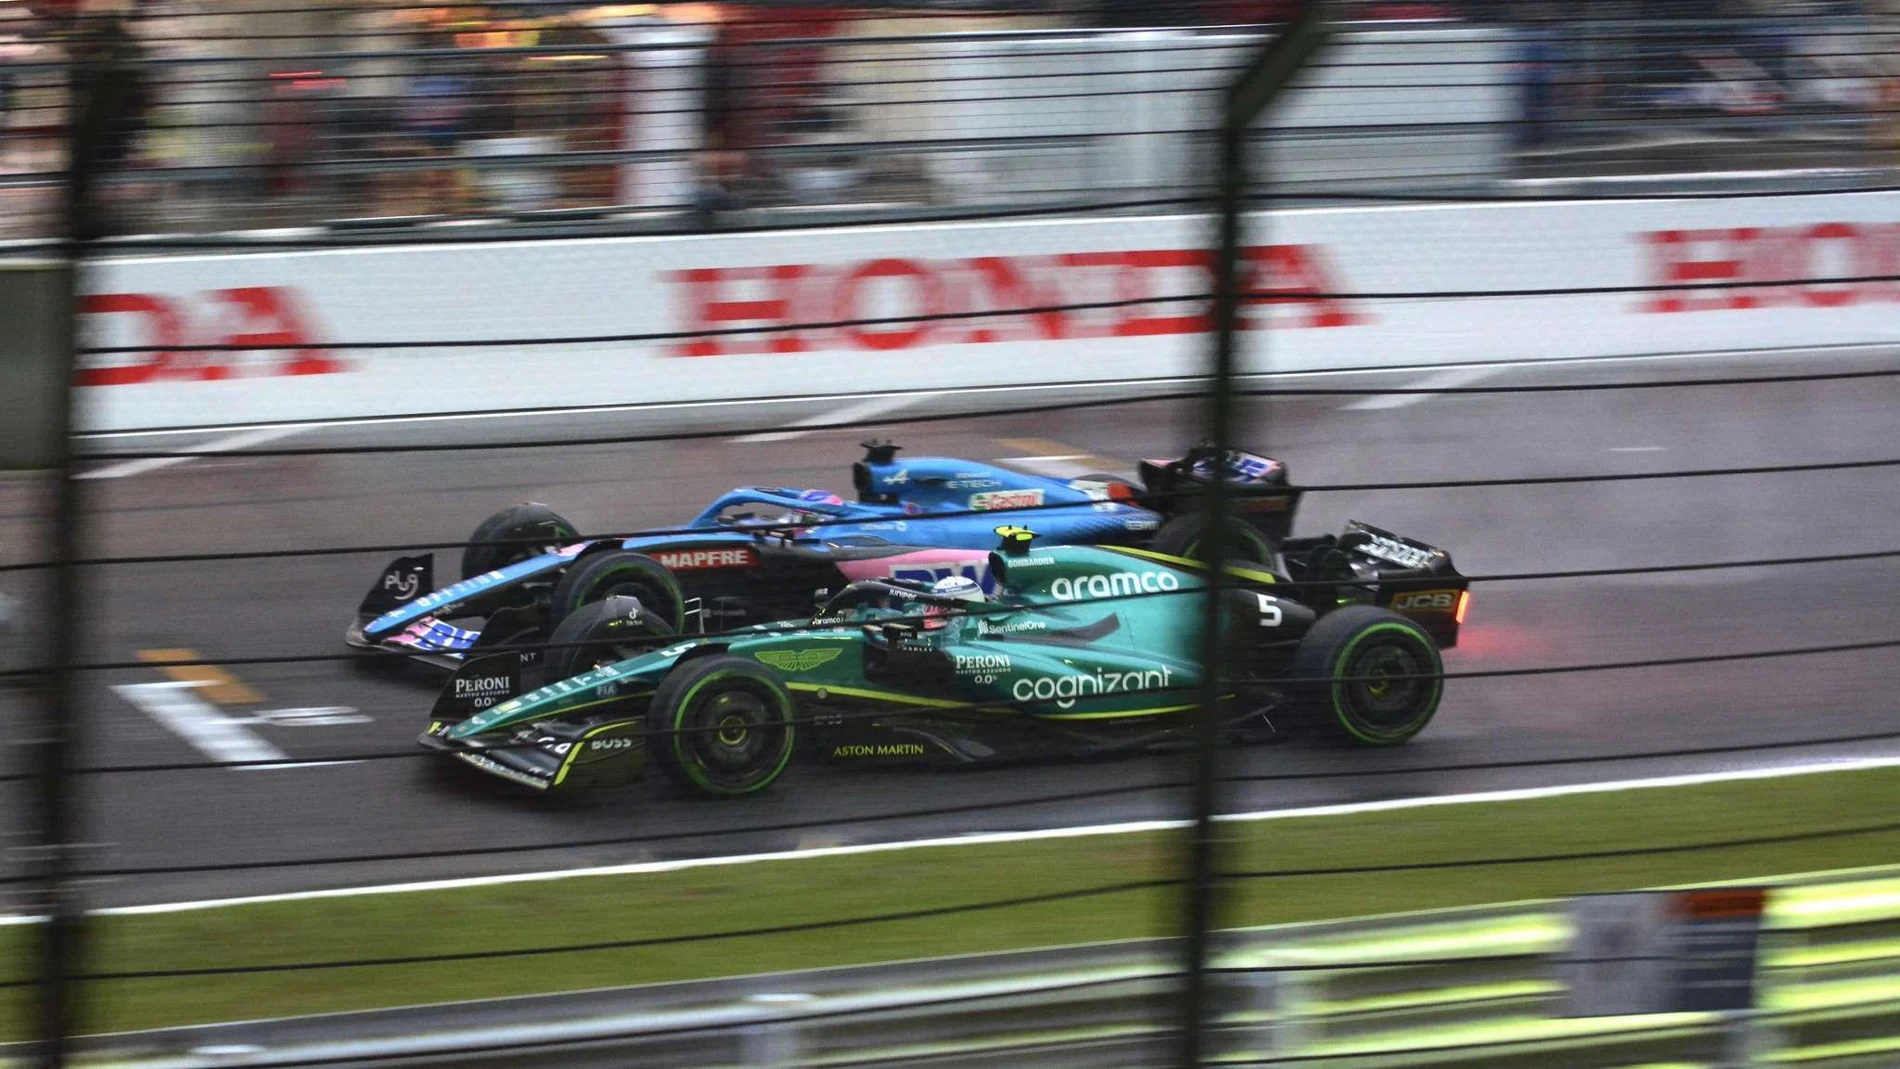 La batalla final entre Fernando Alonso y Vettel en Suzuka